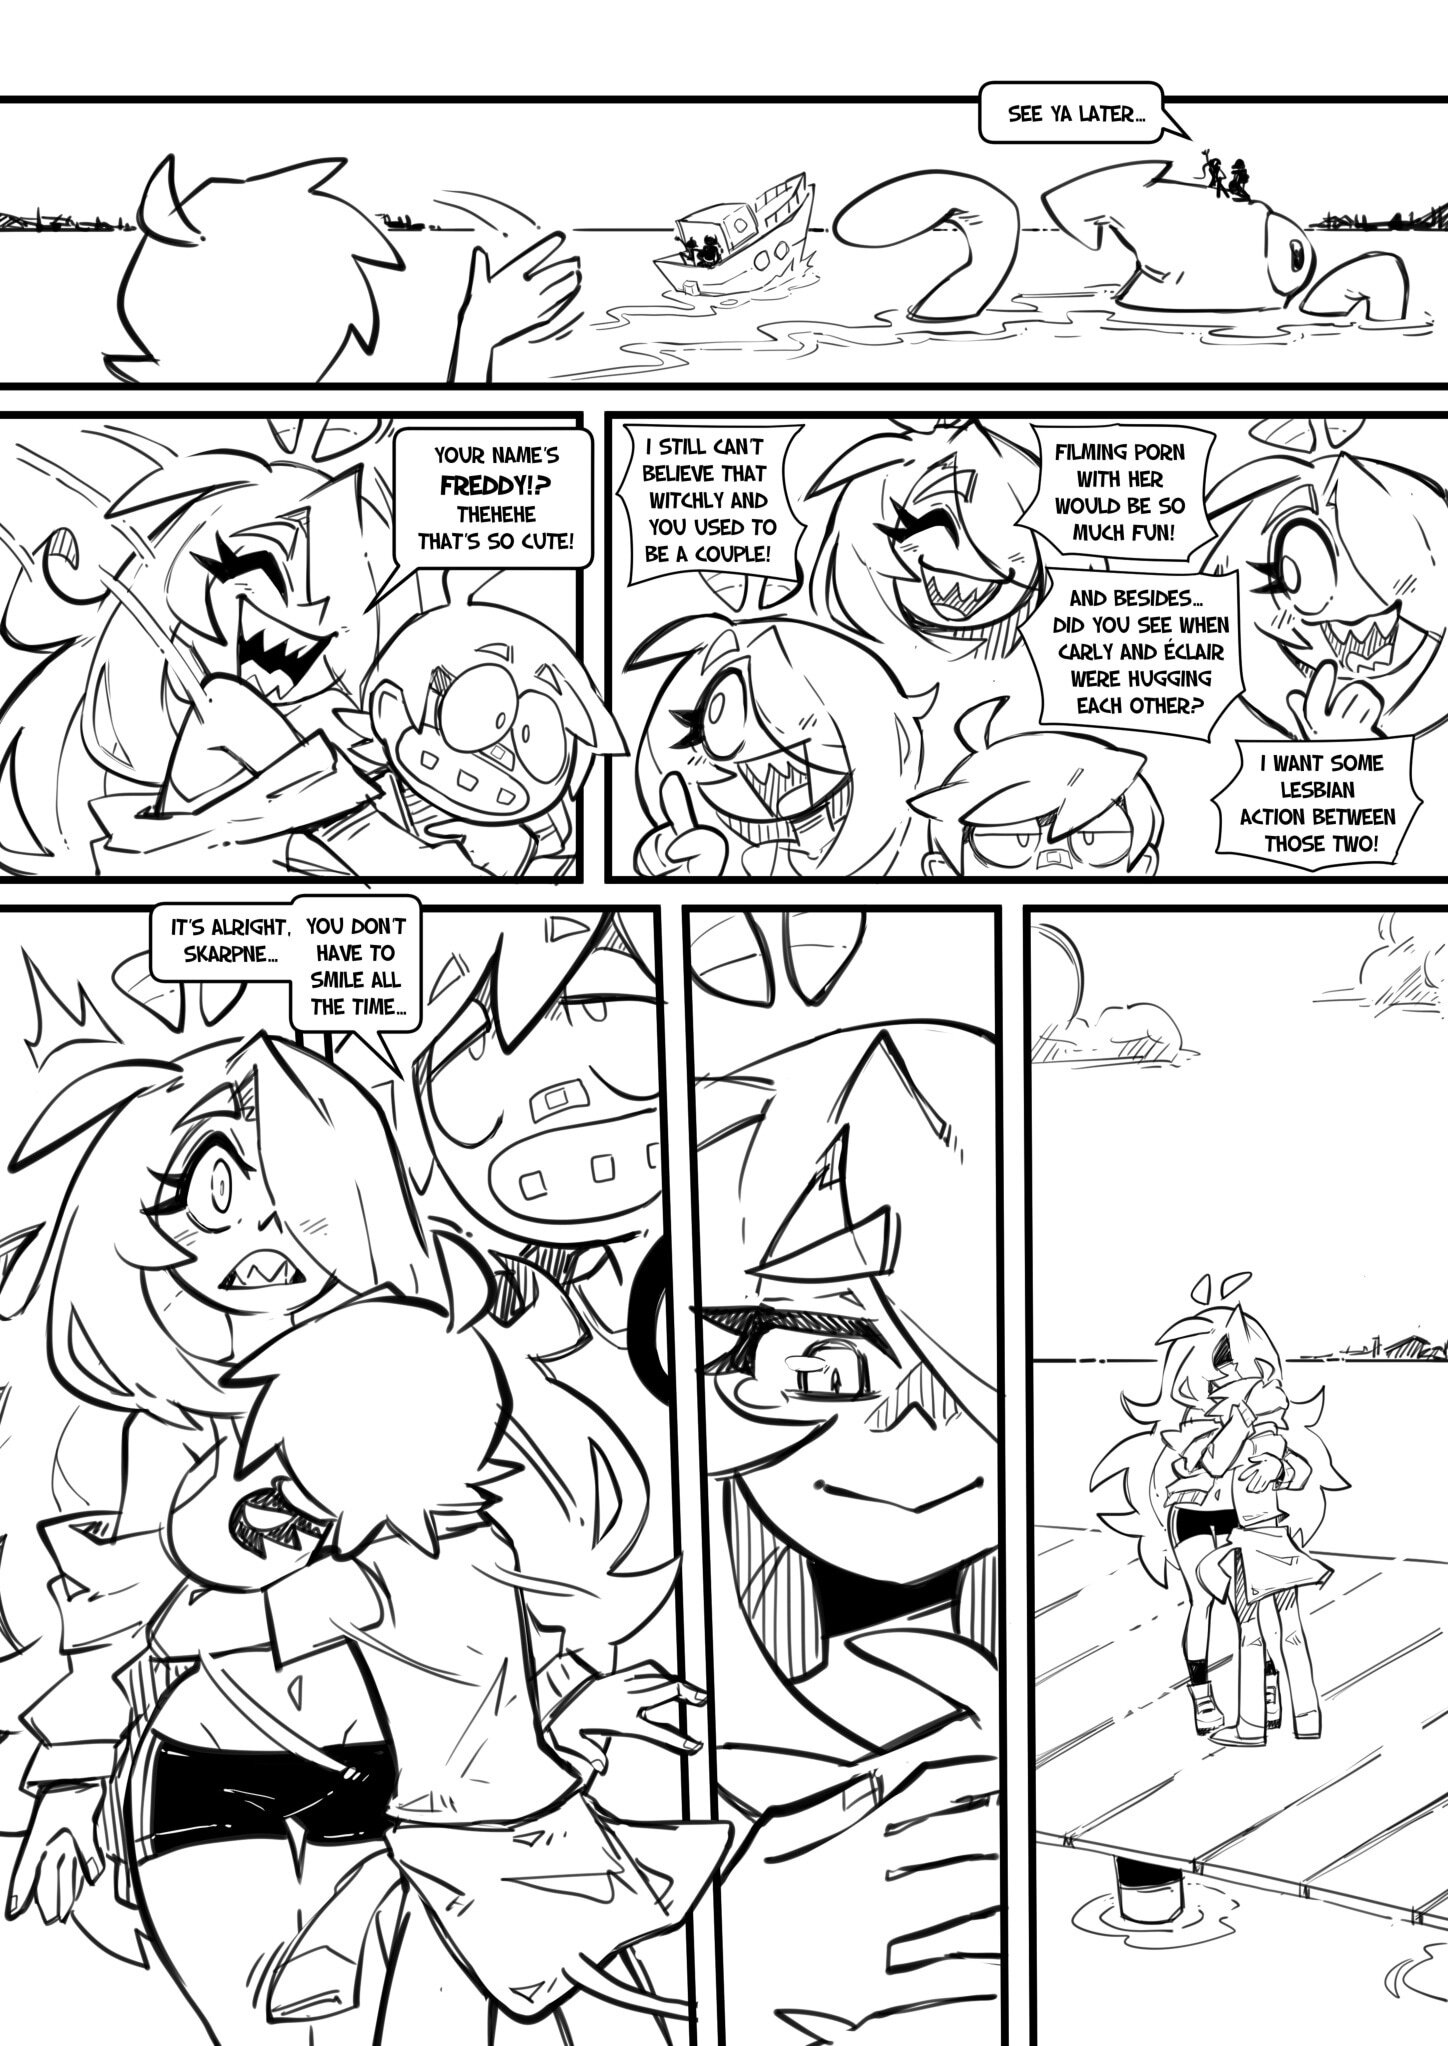 Skarpworld 10: Milk Crisis 4 - Gravity - Page 33